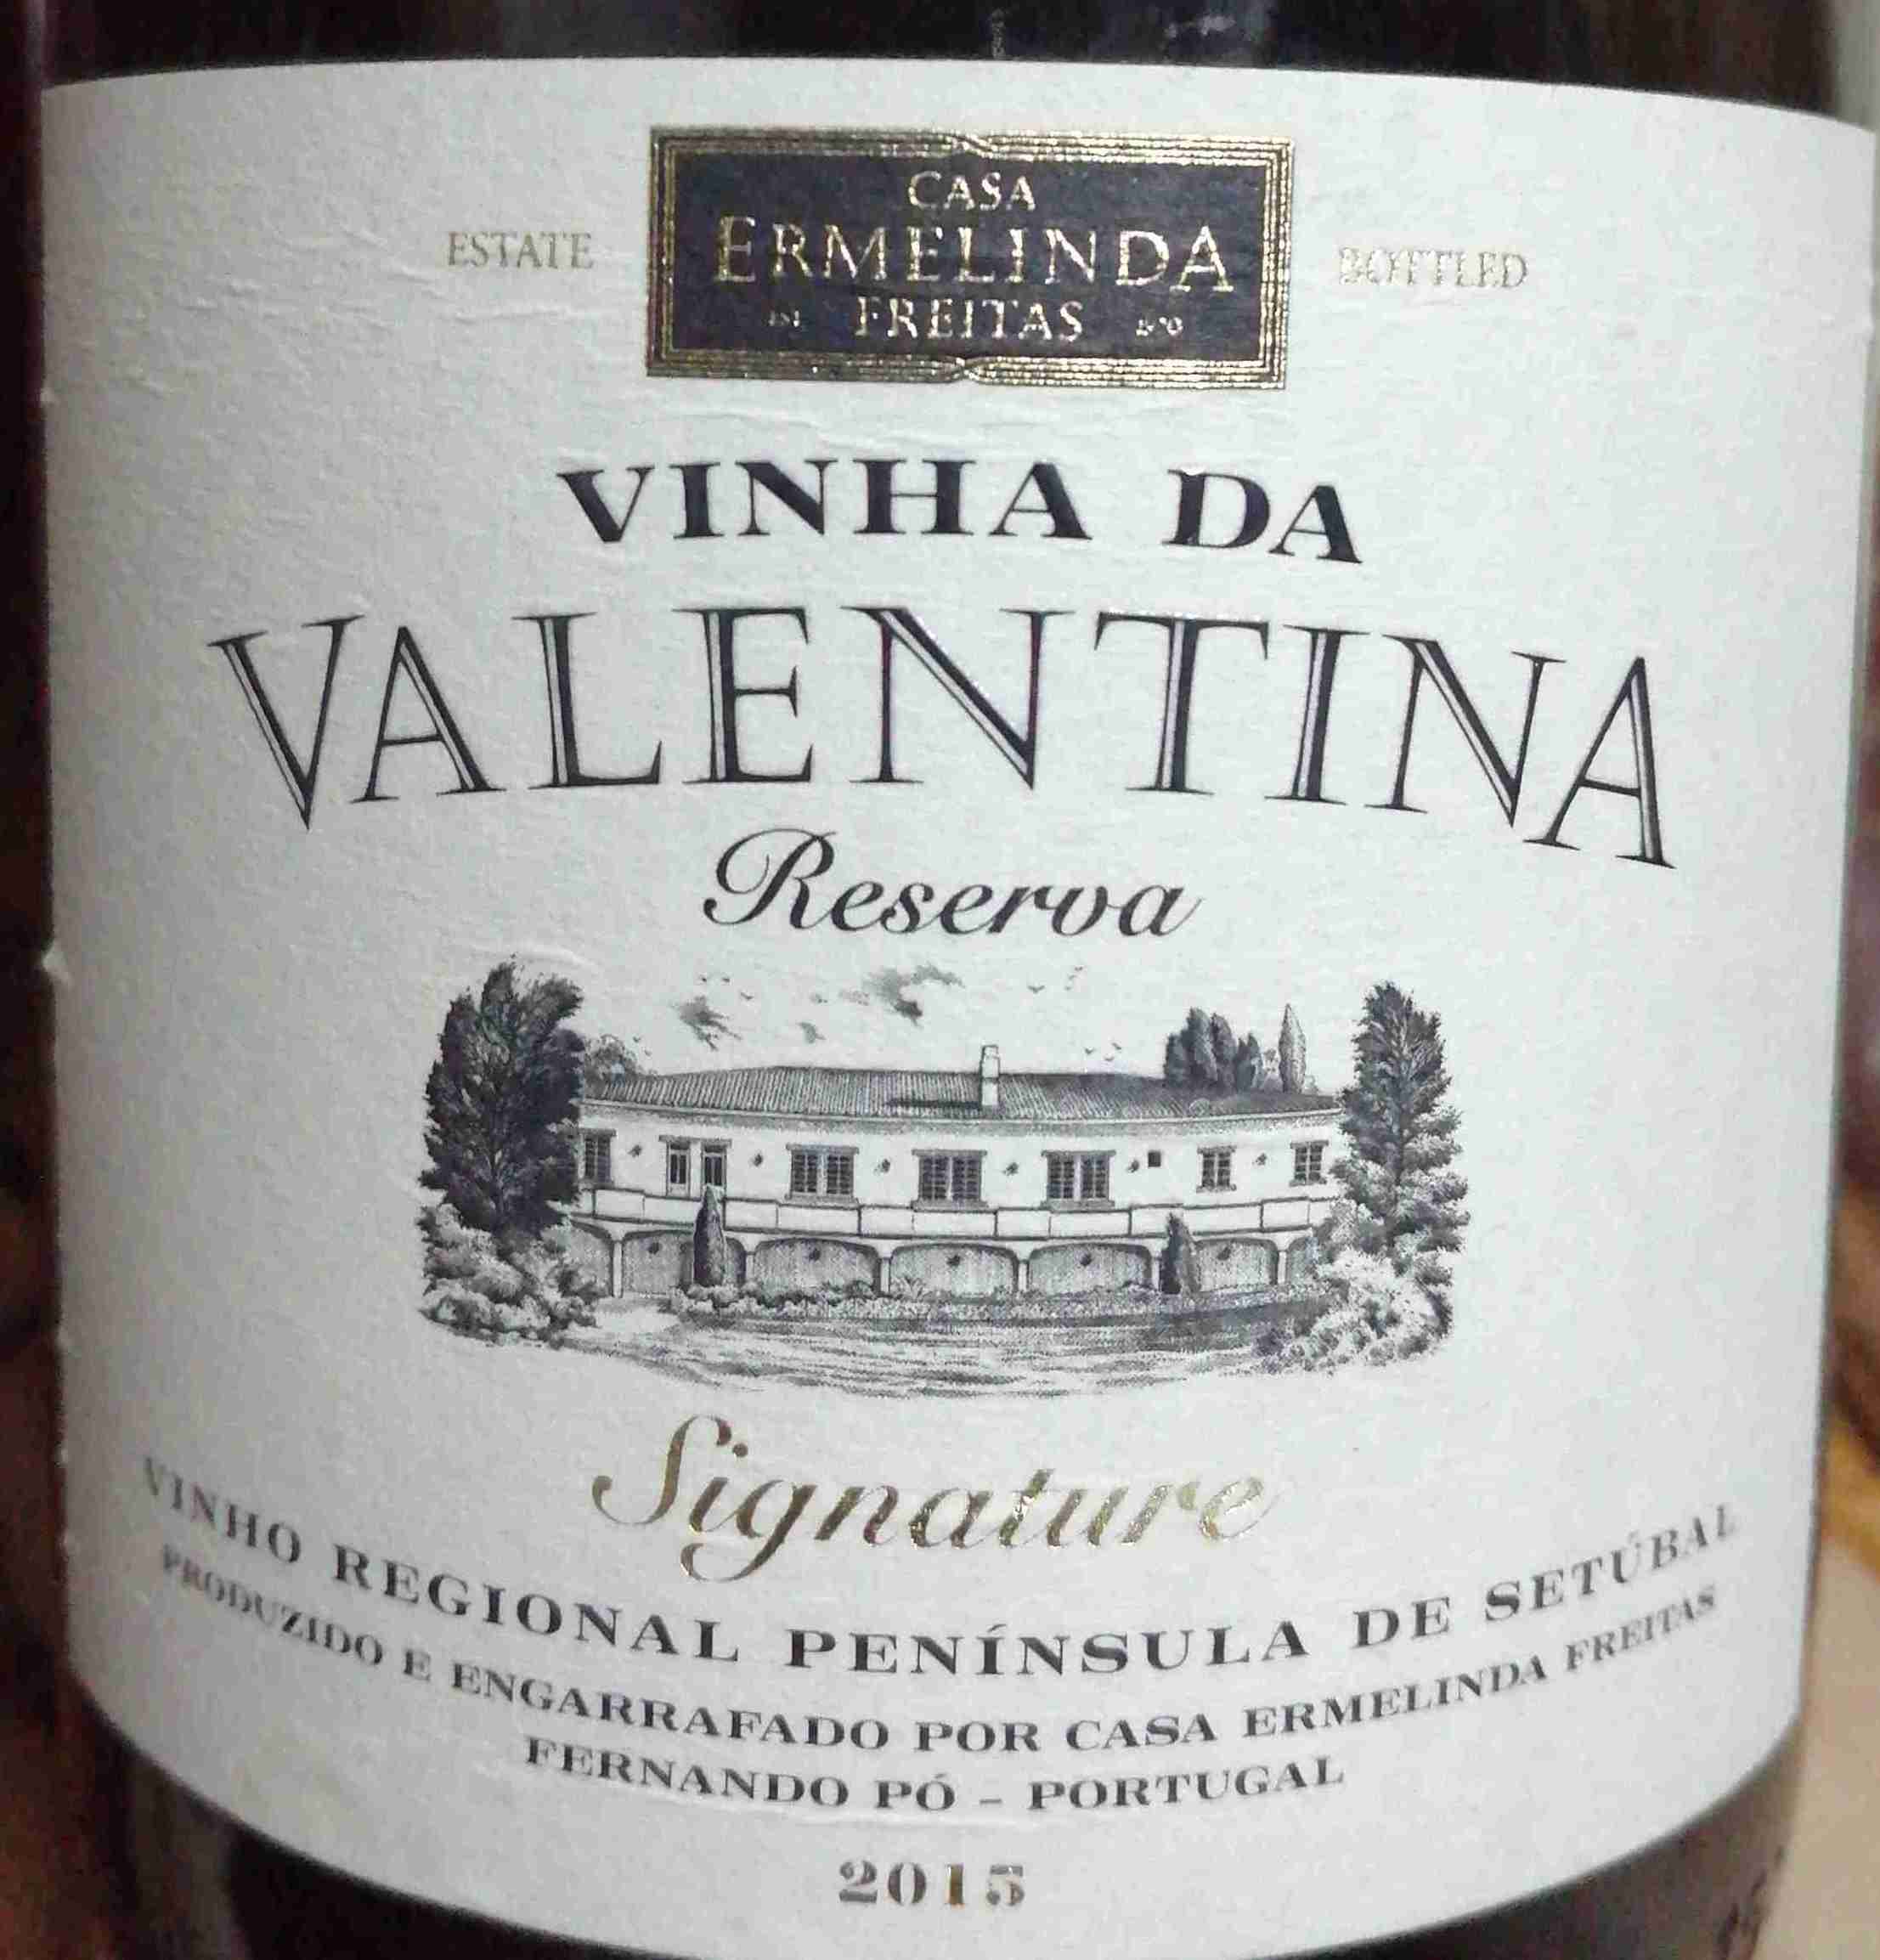 Ermelinda Peninsula Reserva Valentina de Freitas Signature Casa Tinto, Vinha Setubal, Portugal-埃尔梅琳达·弗雷塔斯之家酒庄葡萄酒-价格-评价-中文名-红酒世界网 da